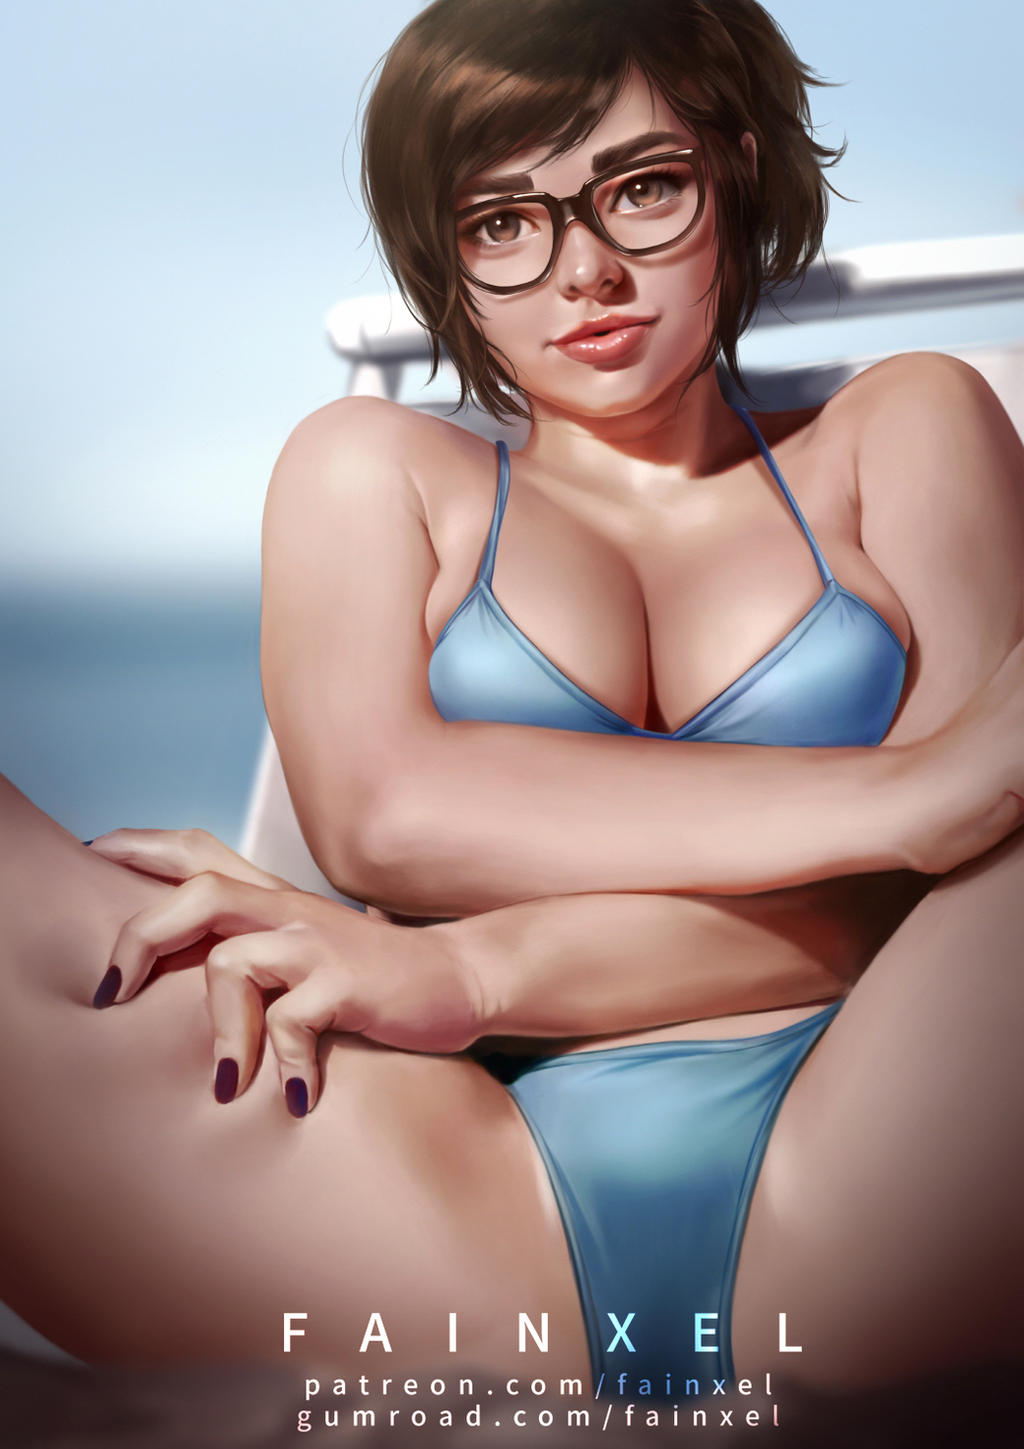 Mei S Bikini By Fainxel On Deviantart